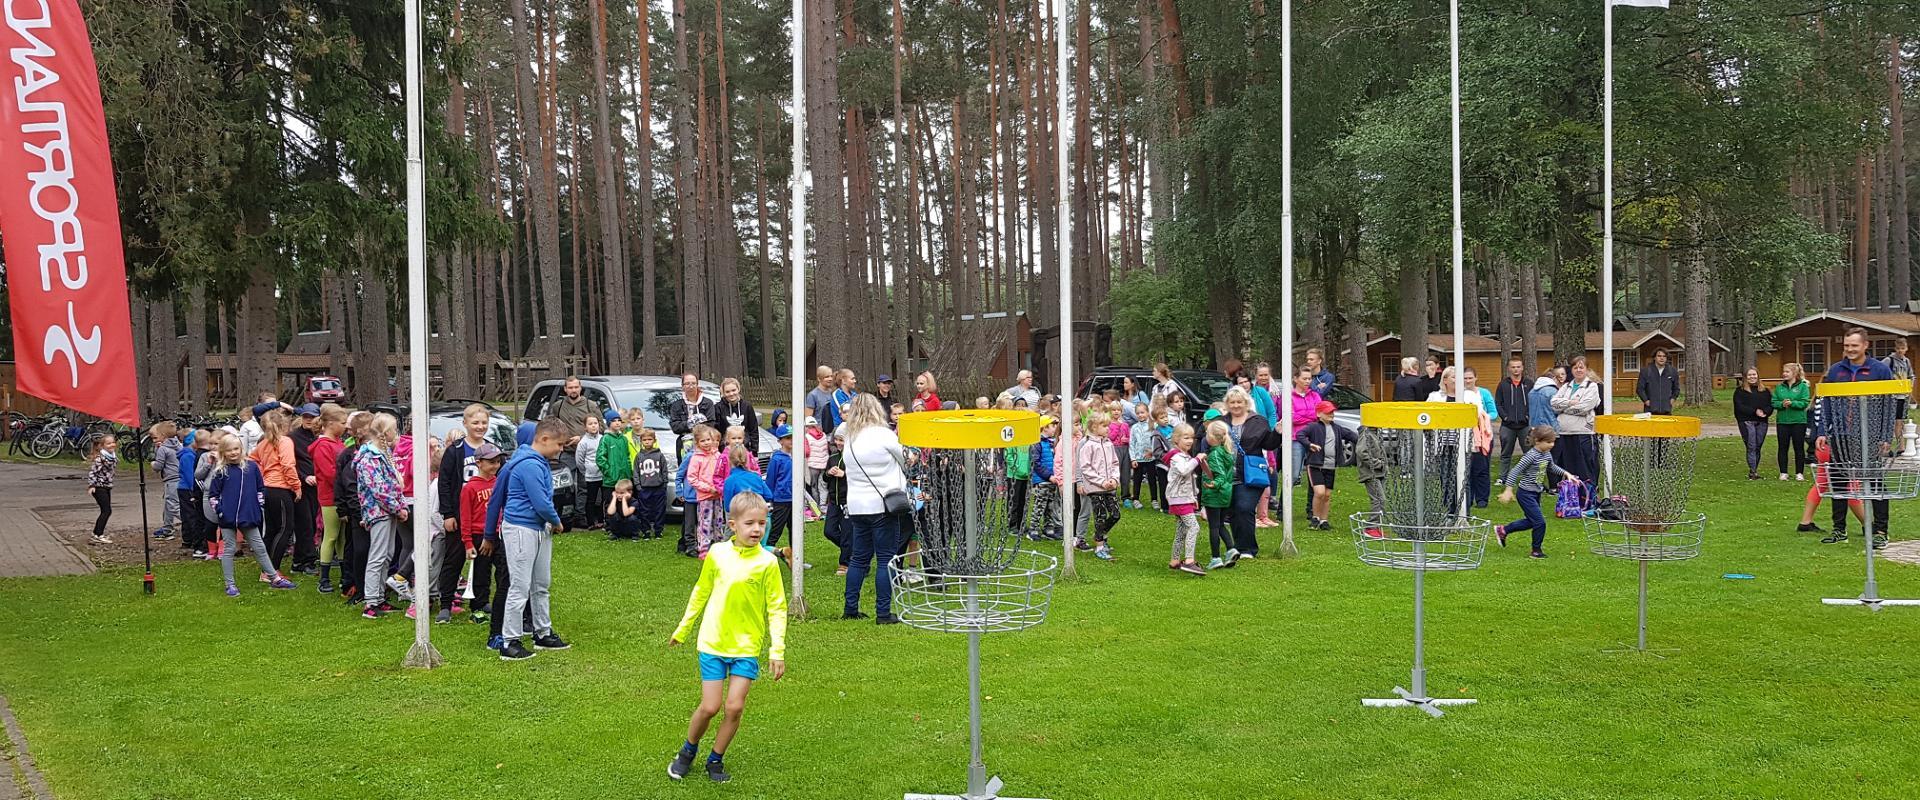 Discgolf-Park des Gesundheitssportszentrums des Landkreises Tartu: Discgolf-Unterricht für Schulen